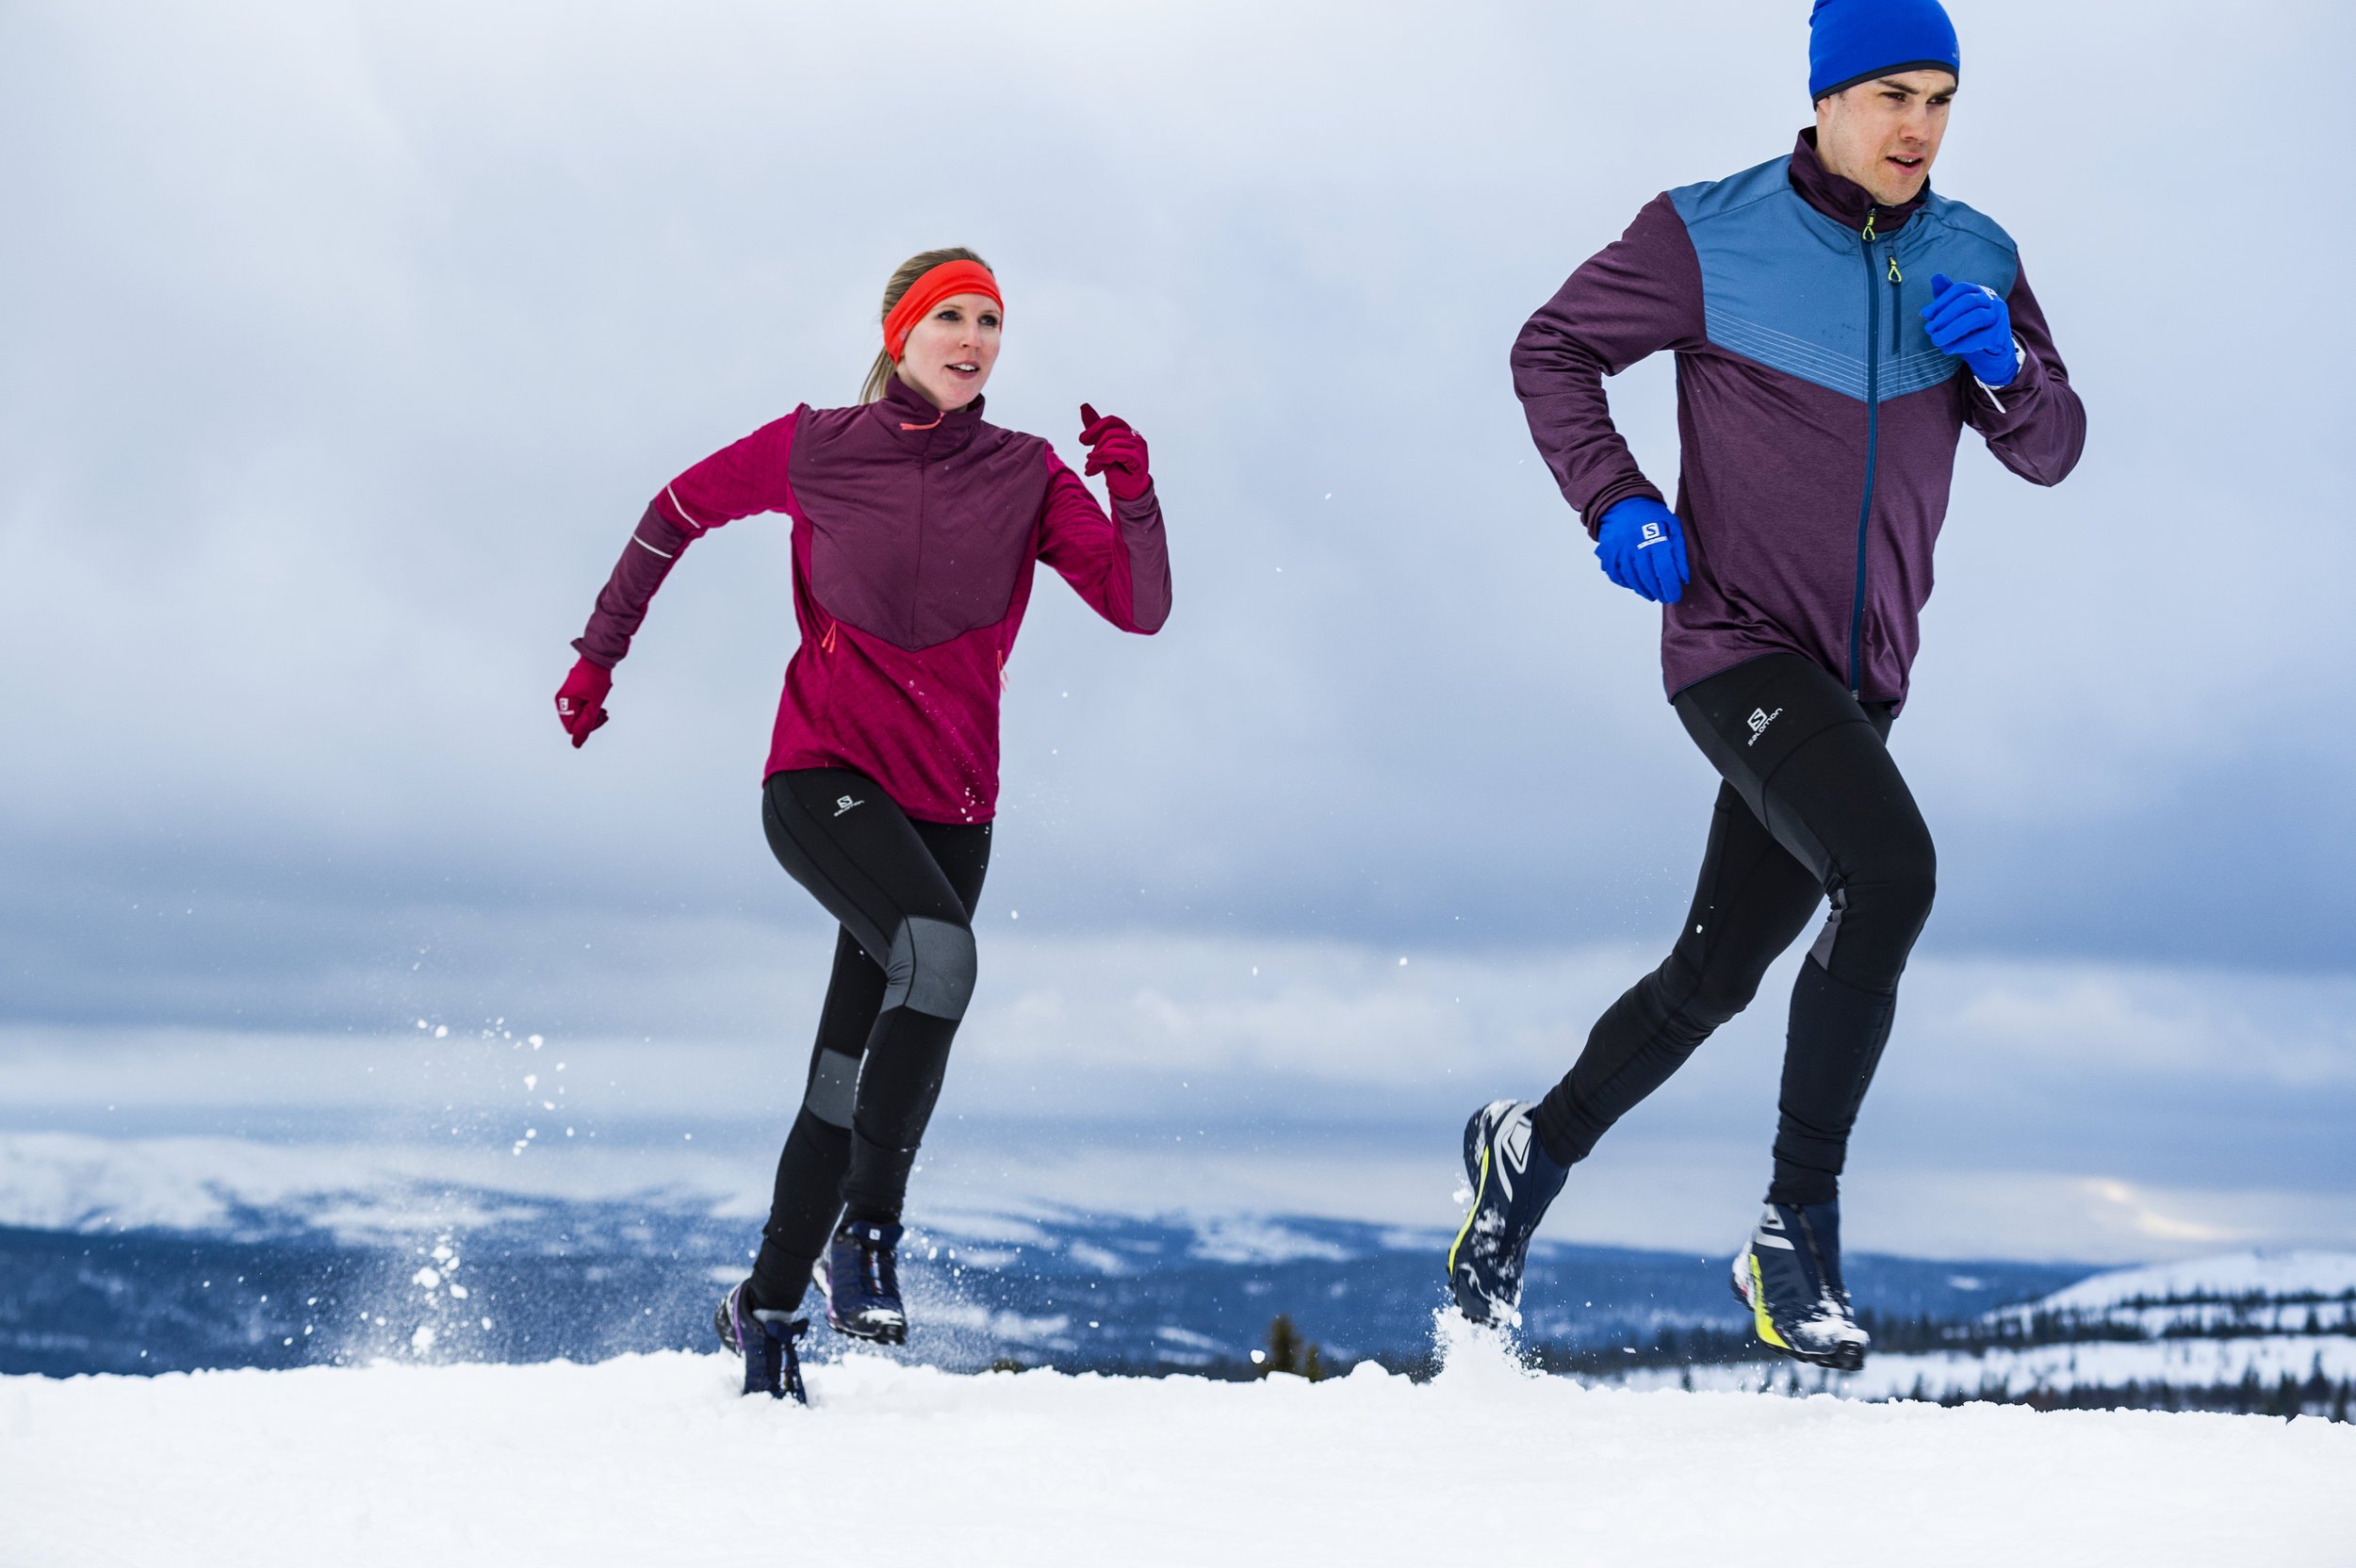 Спортсмены зима. Зимняя экипировка для бега. Одежда для бега зимой. Бег зимой экипировка. Спортивная одежда для бега зимой.